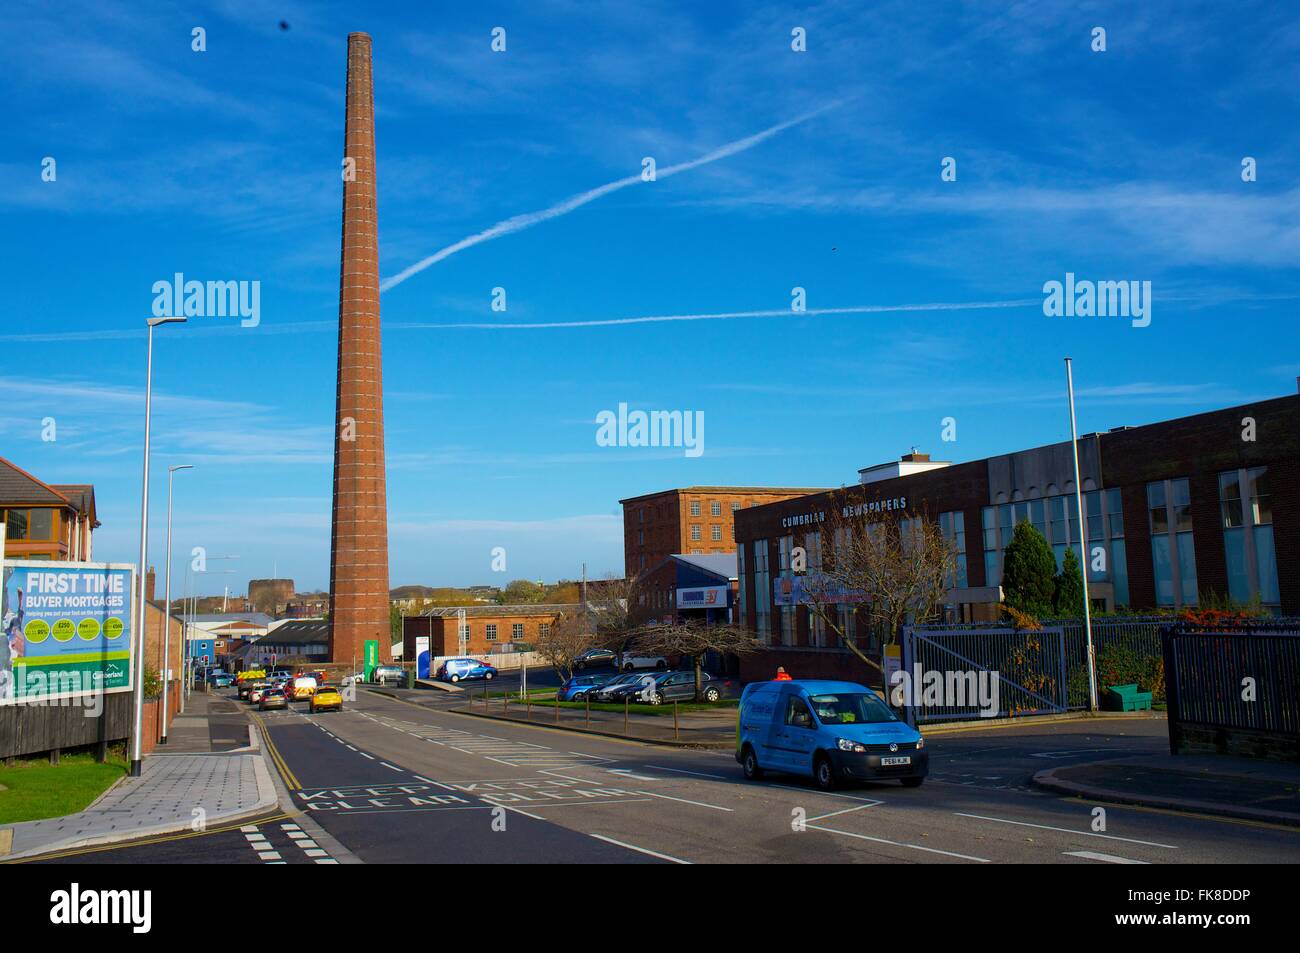 La cheminée de Dixon. 290 pieds de hauteur de cheminée ancienne usine textile. Shaddon Mill Road, Dalston, Shaddongate, Carlisle, Cumbria, Royaume-Uni Banque D'Images